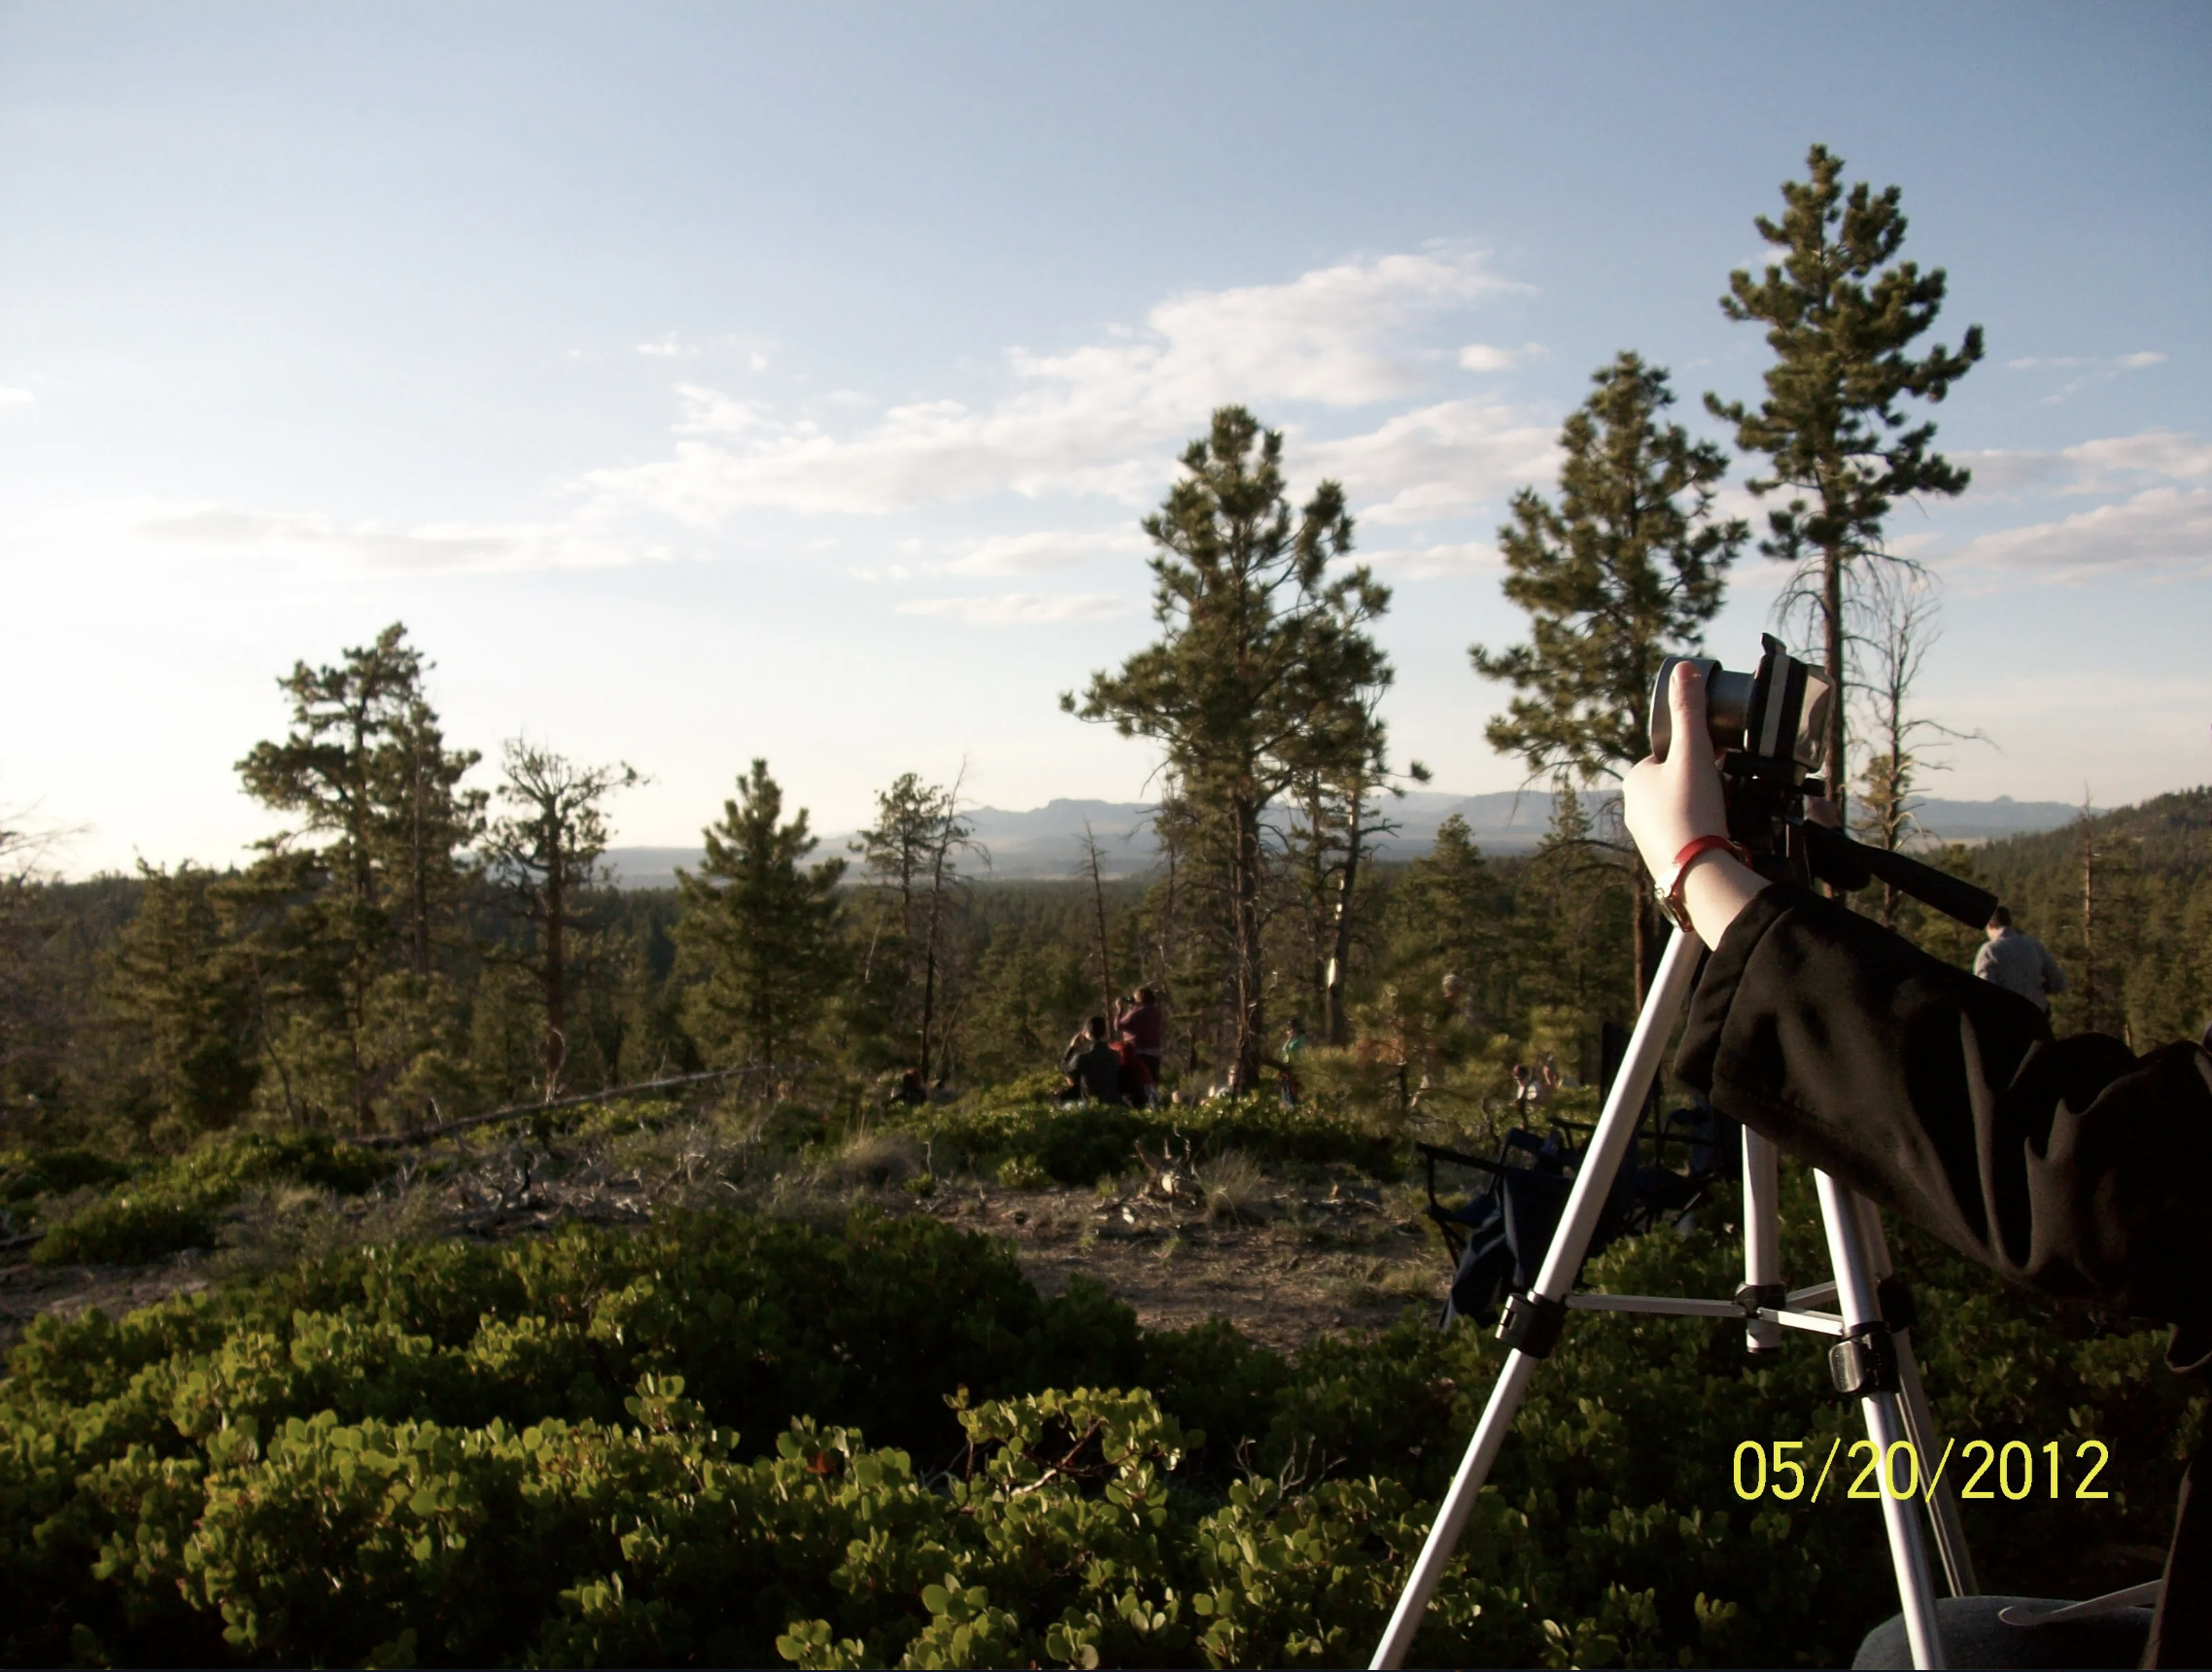 Esta imagen muestra un paisaje con árboles de fondo y un cielo celeste con algunas nubes blancas. A la derecha de la foto, se ve una cámara sobre un trípode, y una mano sujetándola.